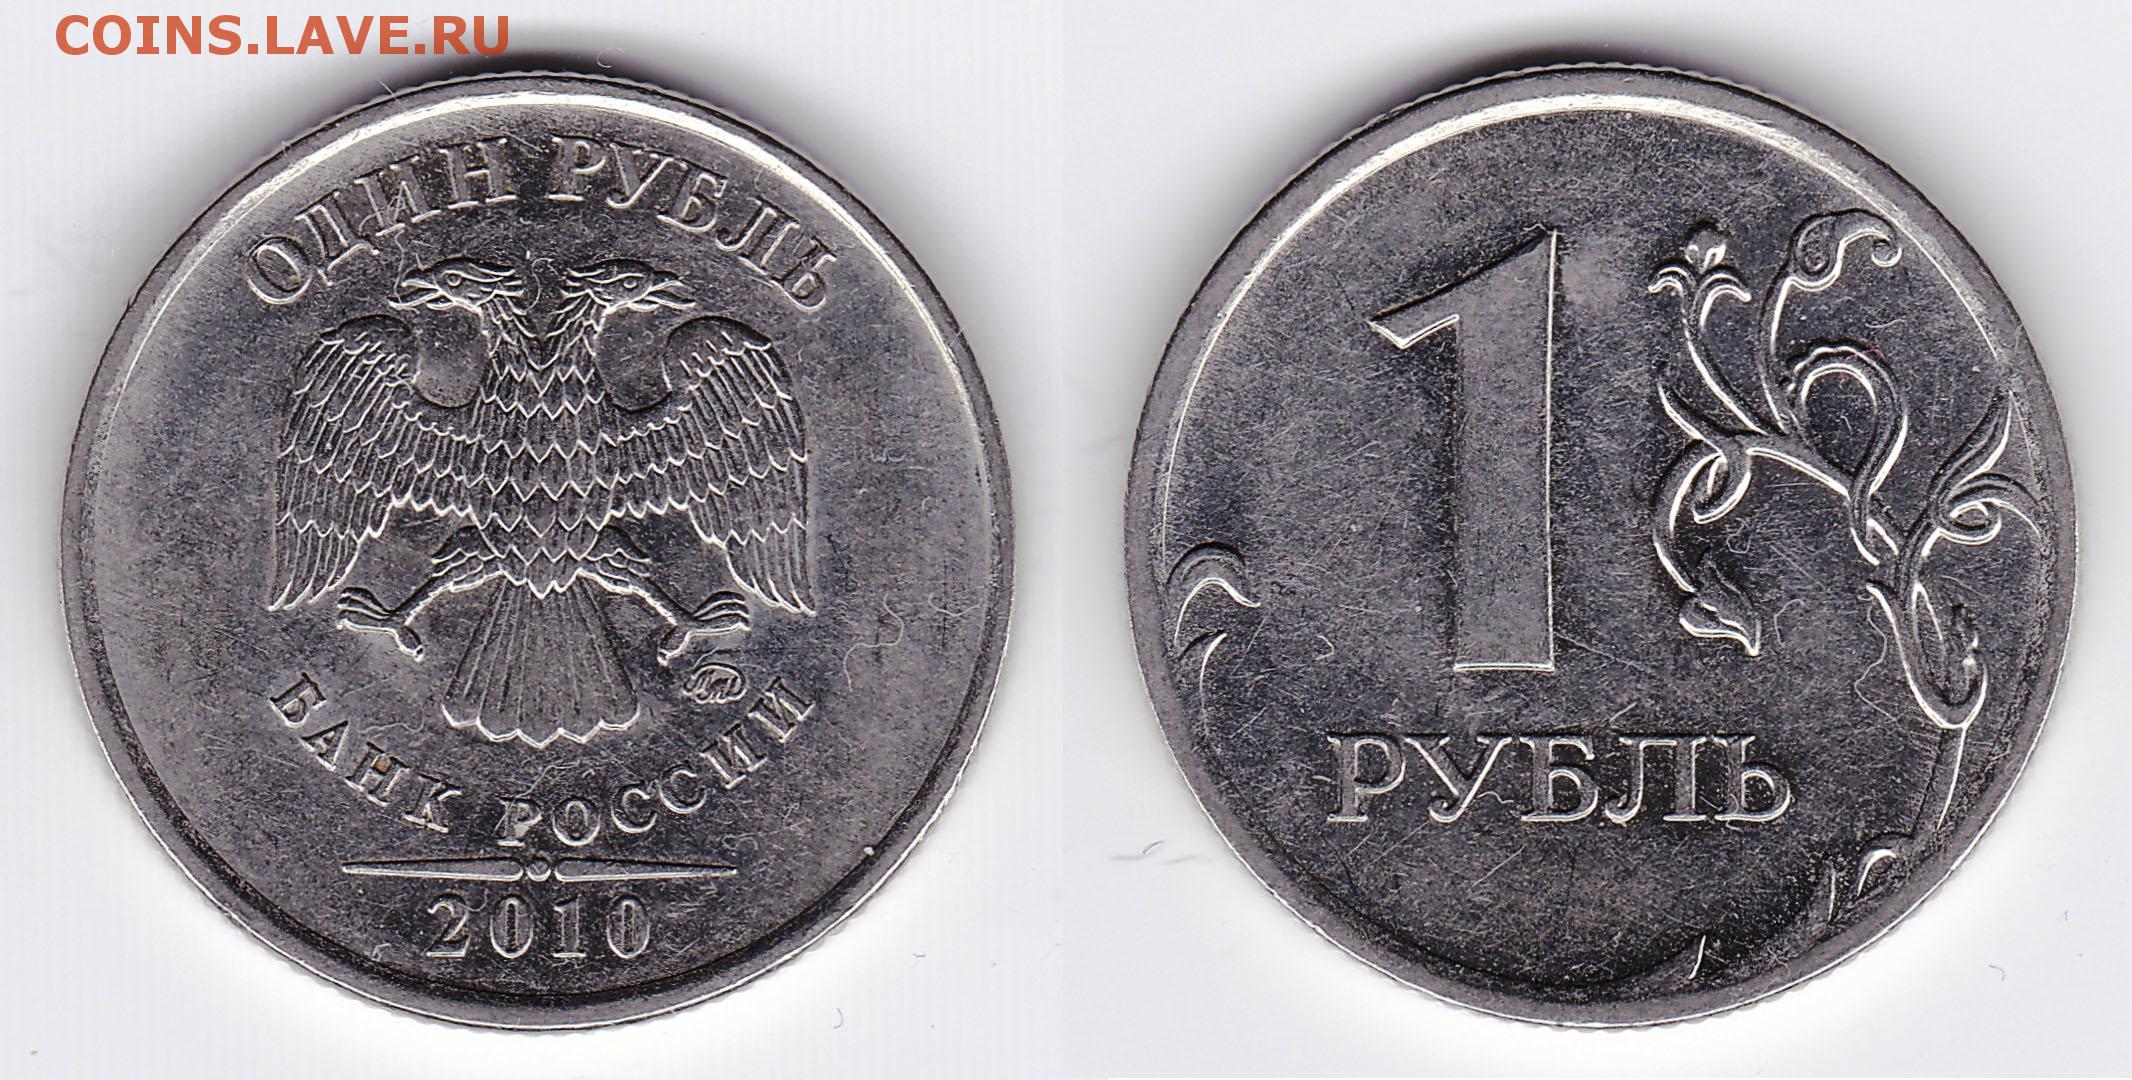 2 80 в рублях. Монета 1 рубль 2014. Монета 1 рубль 2010 СПМД. Монета 1 рубль с буквой р. Вес рубля 2014 года.